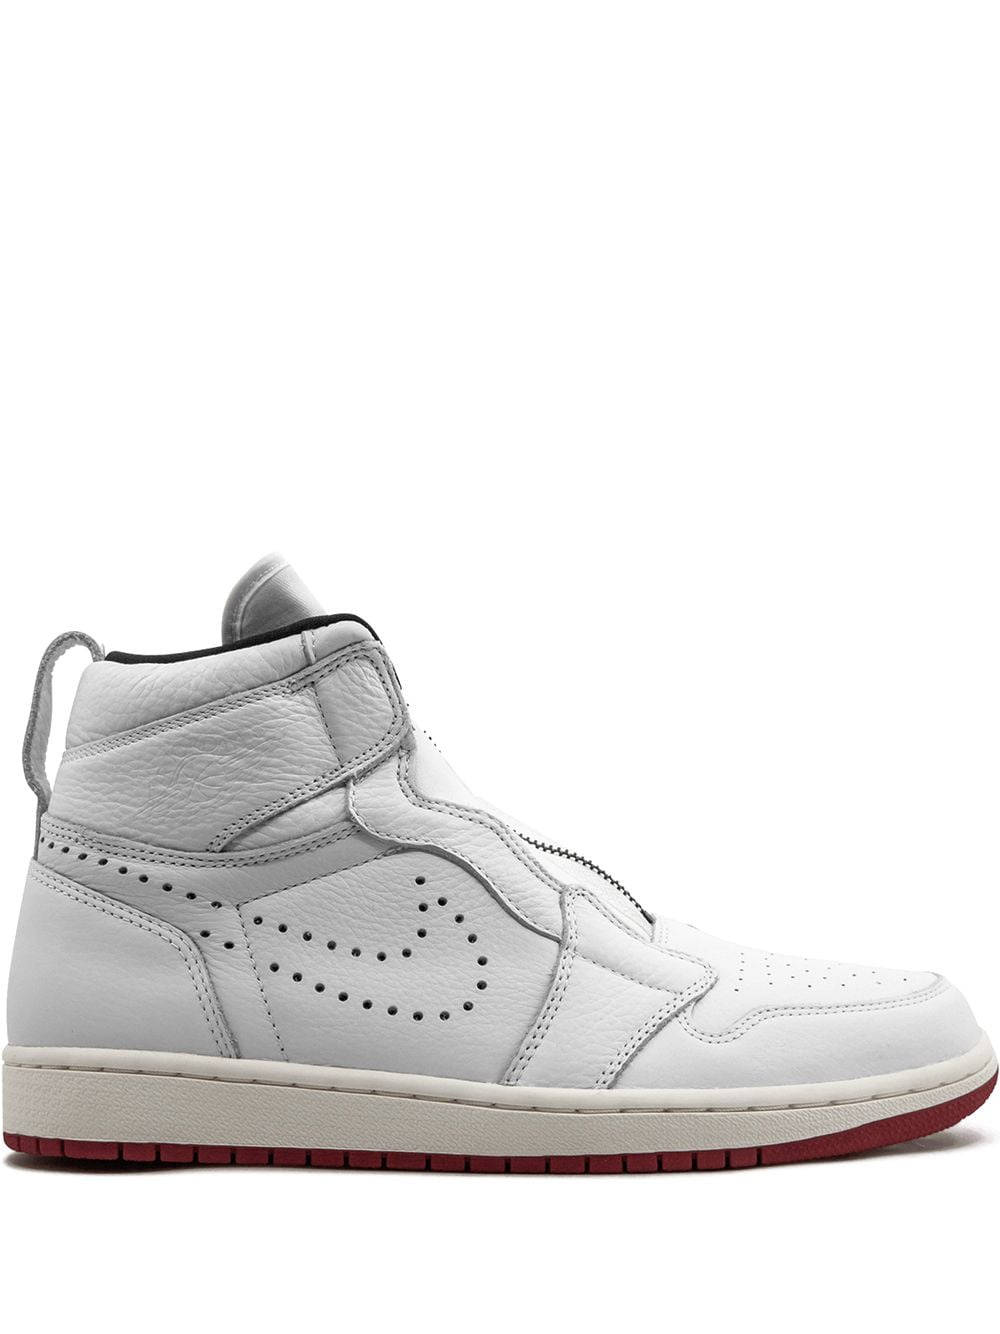 Jordan Air Jordan 1 retro high sneakers - White